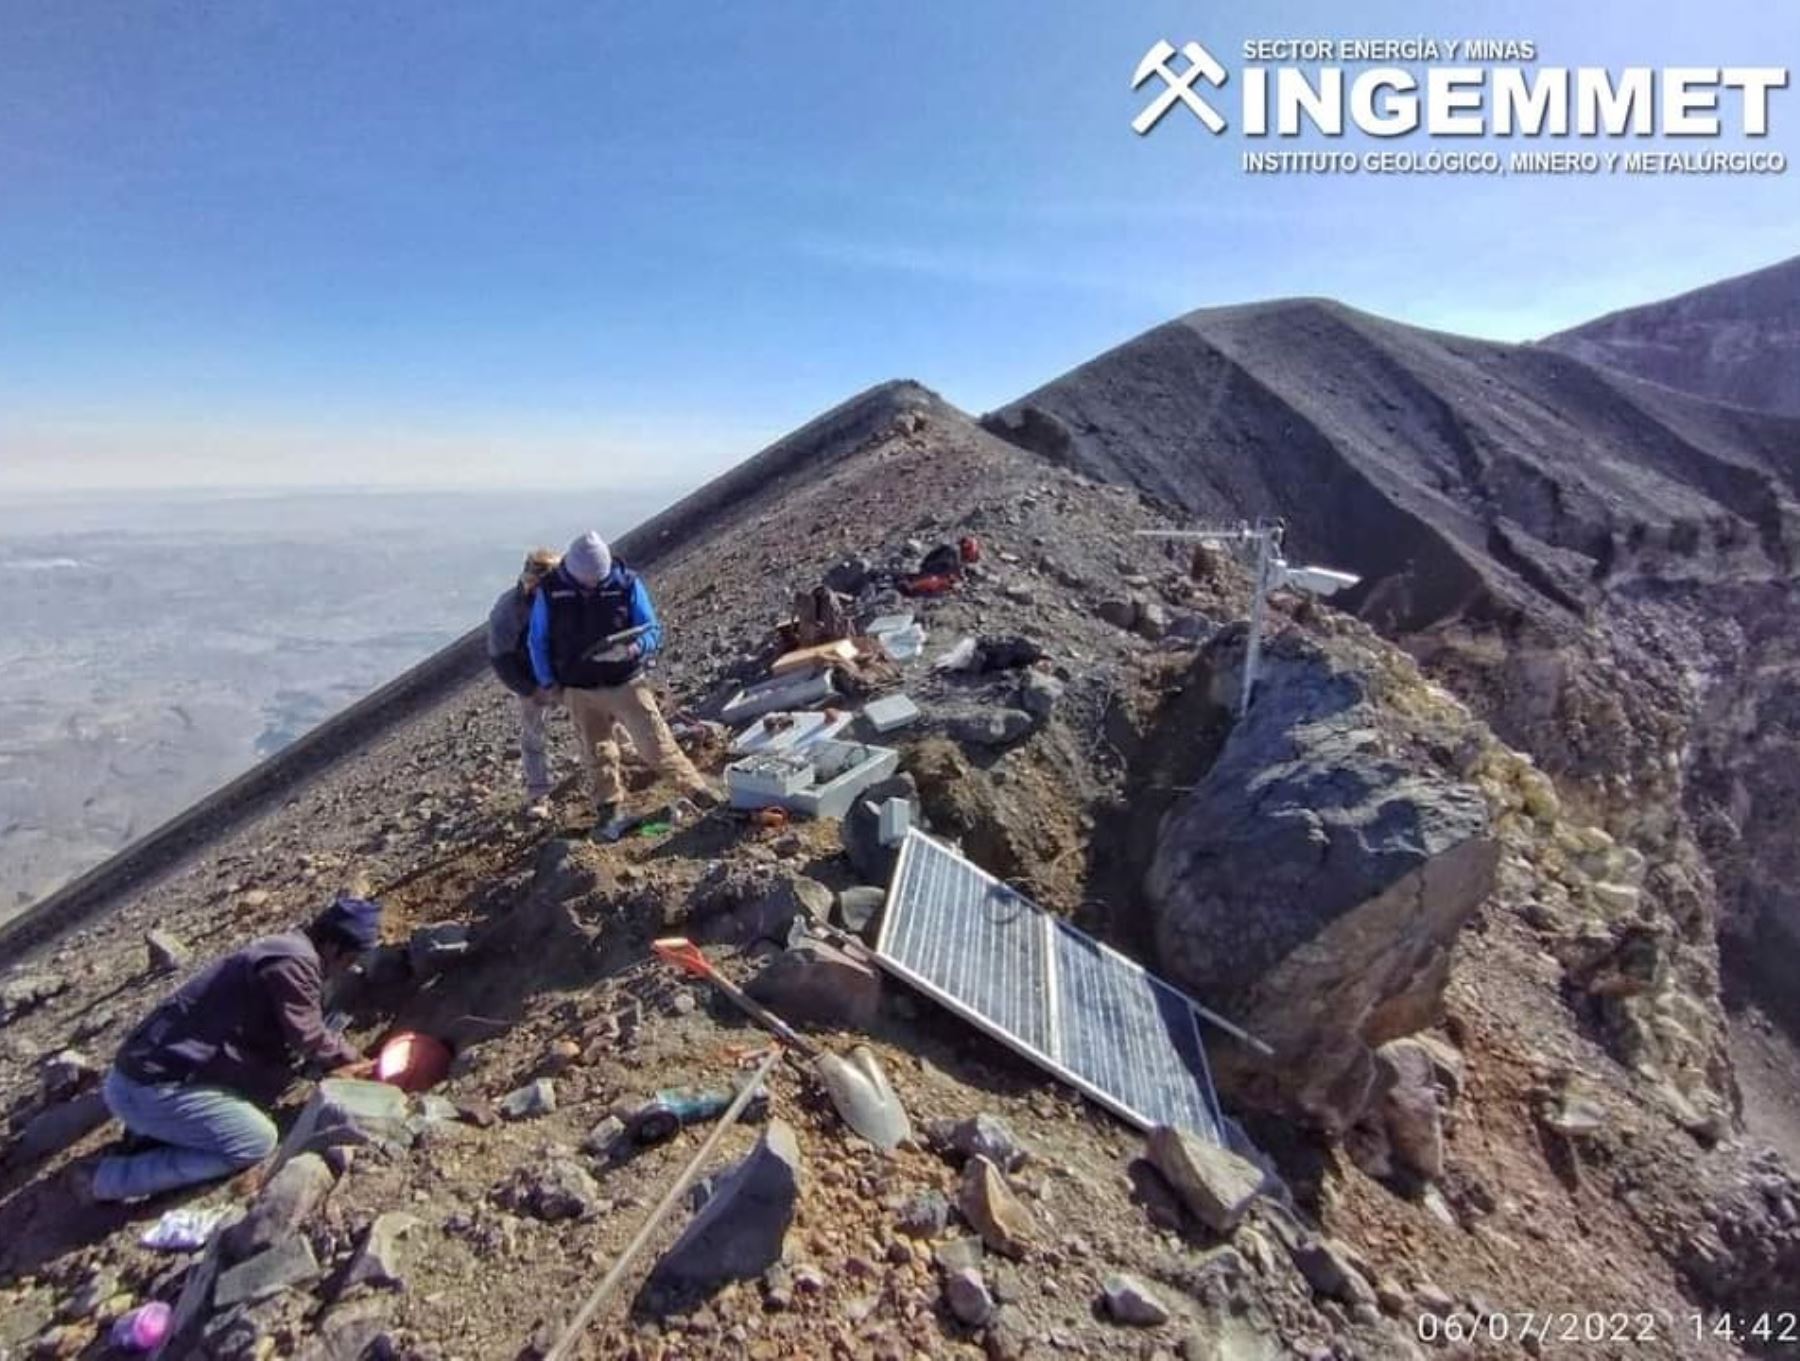 Especialistas del Ingemmet implementaron en la cima del volcán Misti, región Arequipa, la estación multiparamétrica de mayor altitud en el Perú. Foto: Ingemmet.